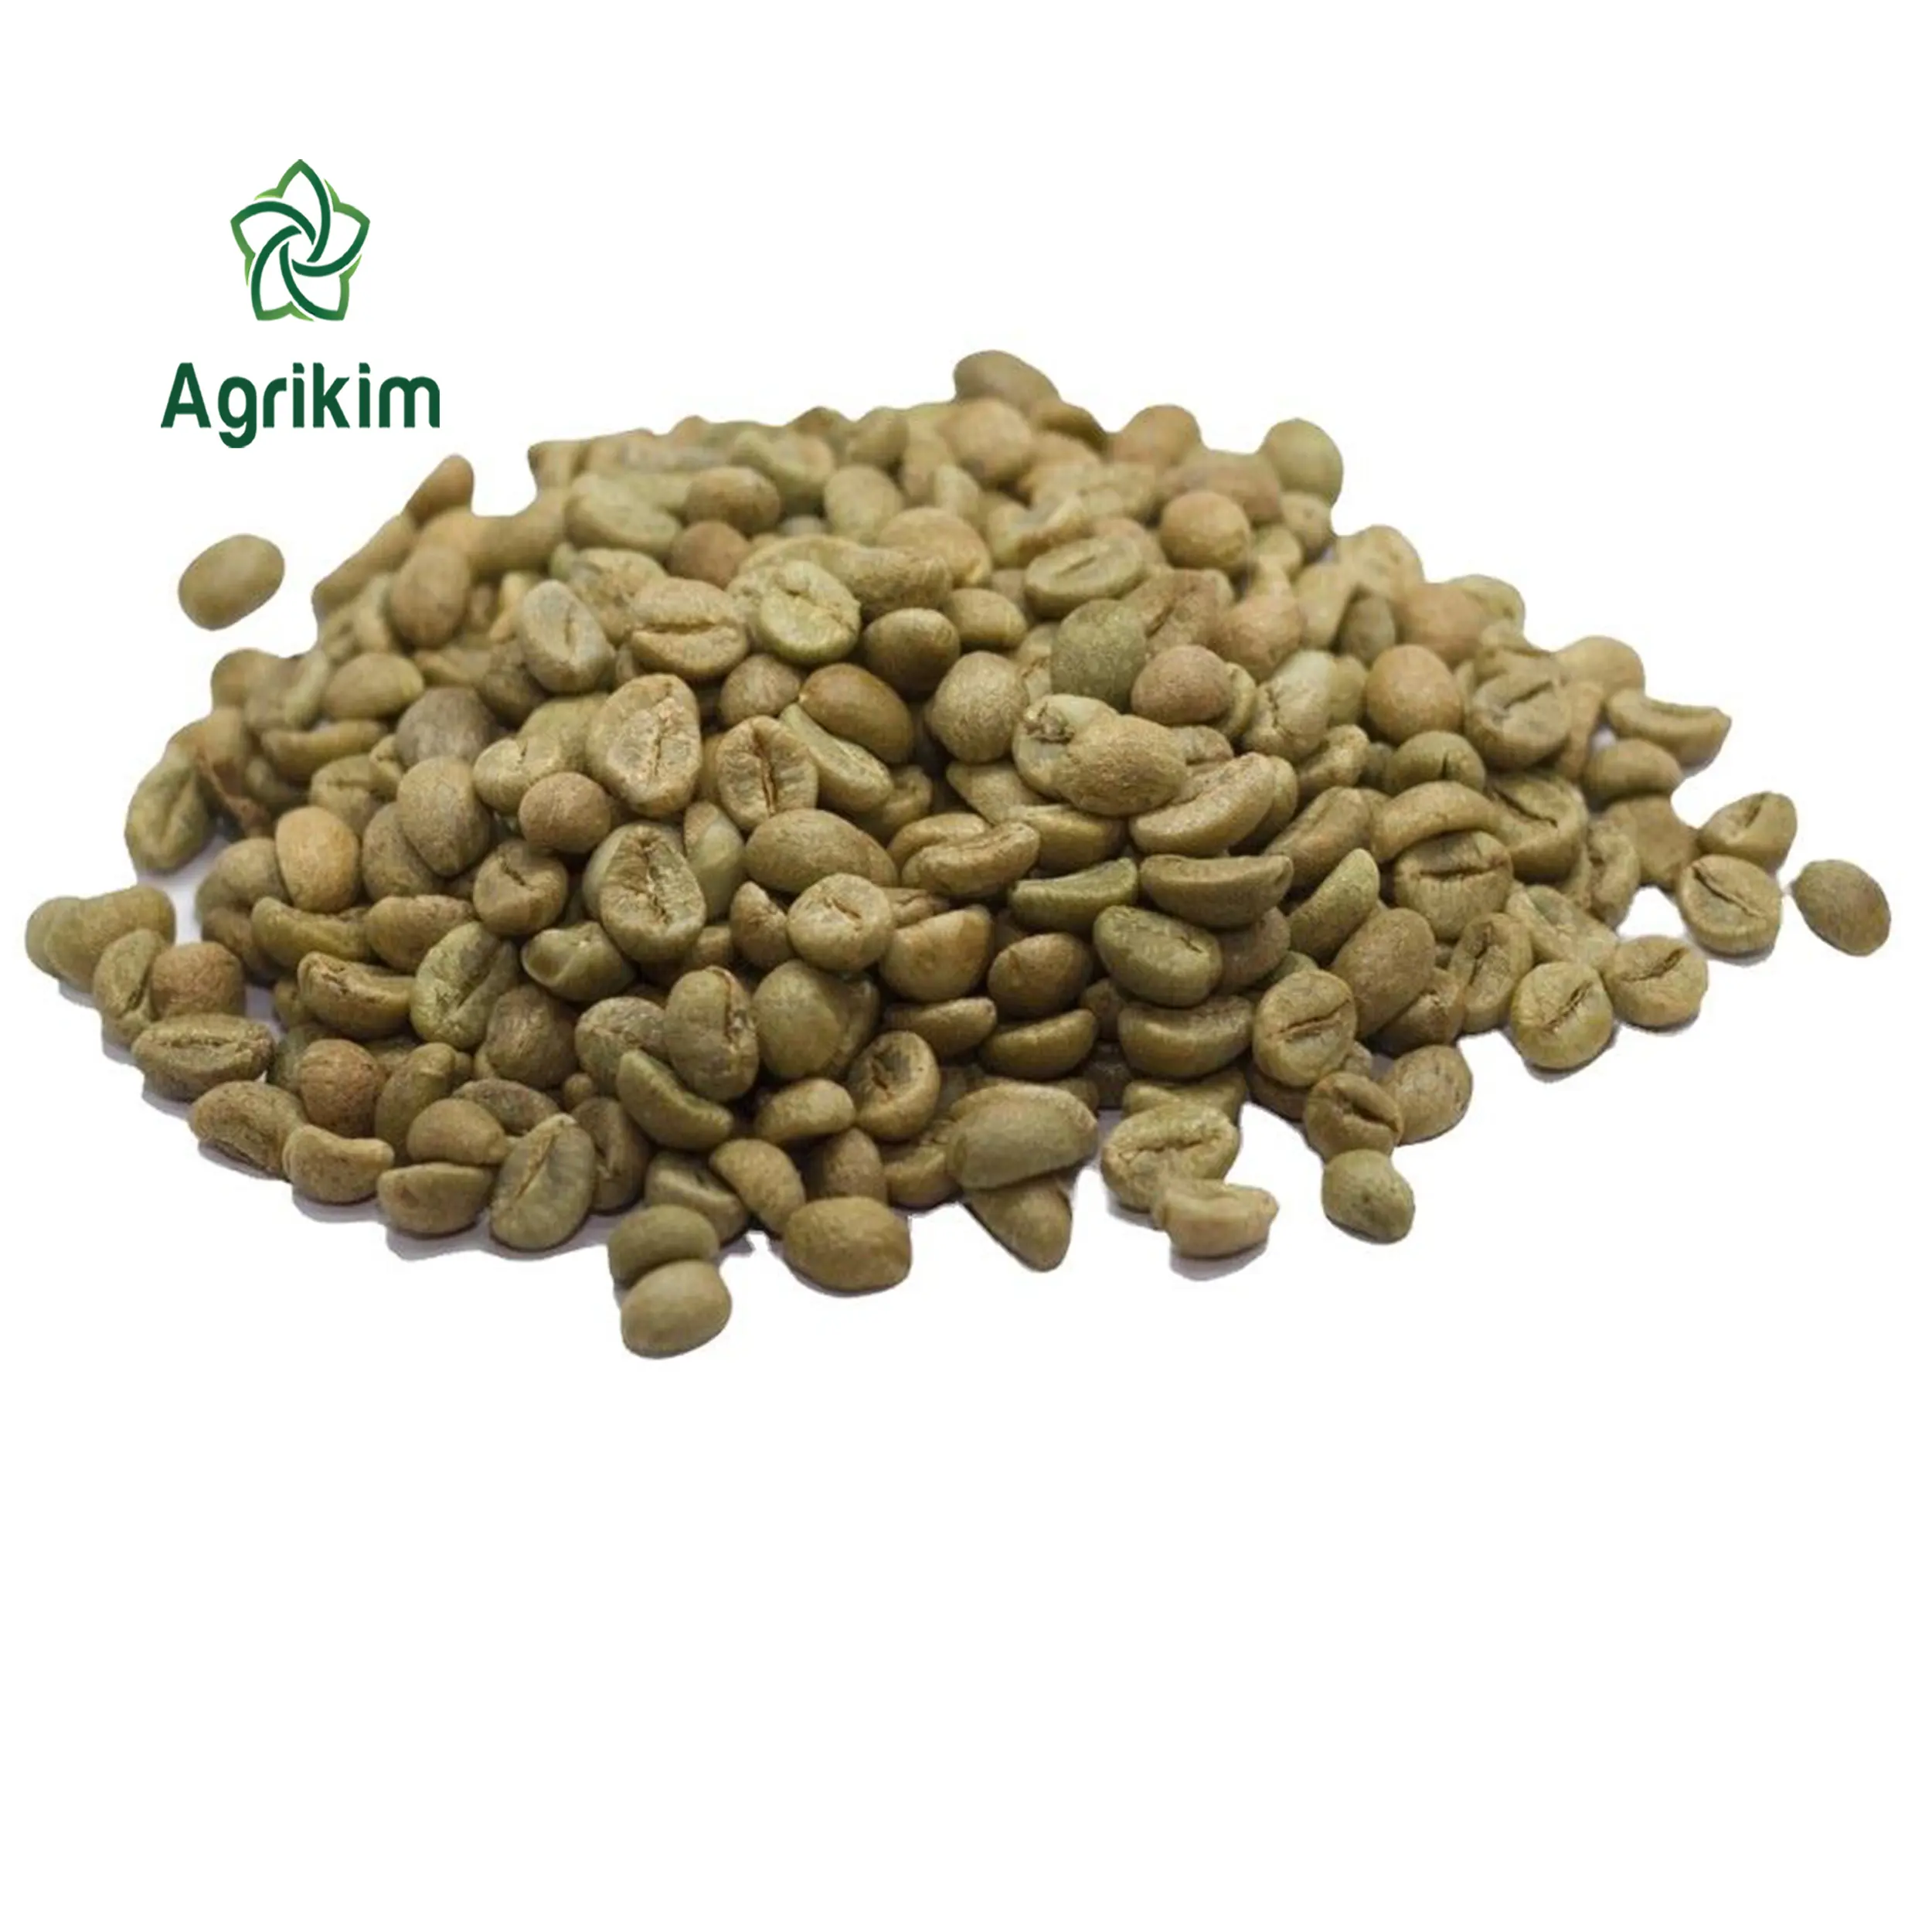 [무료 샘플] Robusta 커피 콩 베트남 원산지 + 8436356928 에서 녹색/녹색 커피 콩 전체를 배송 할 준비가되었습니다.